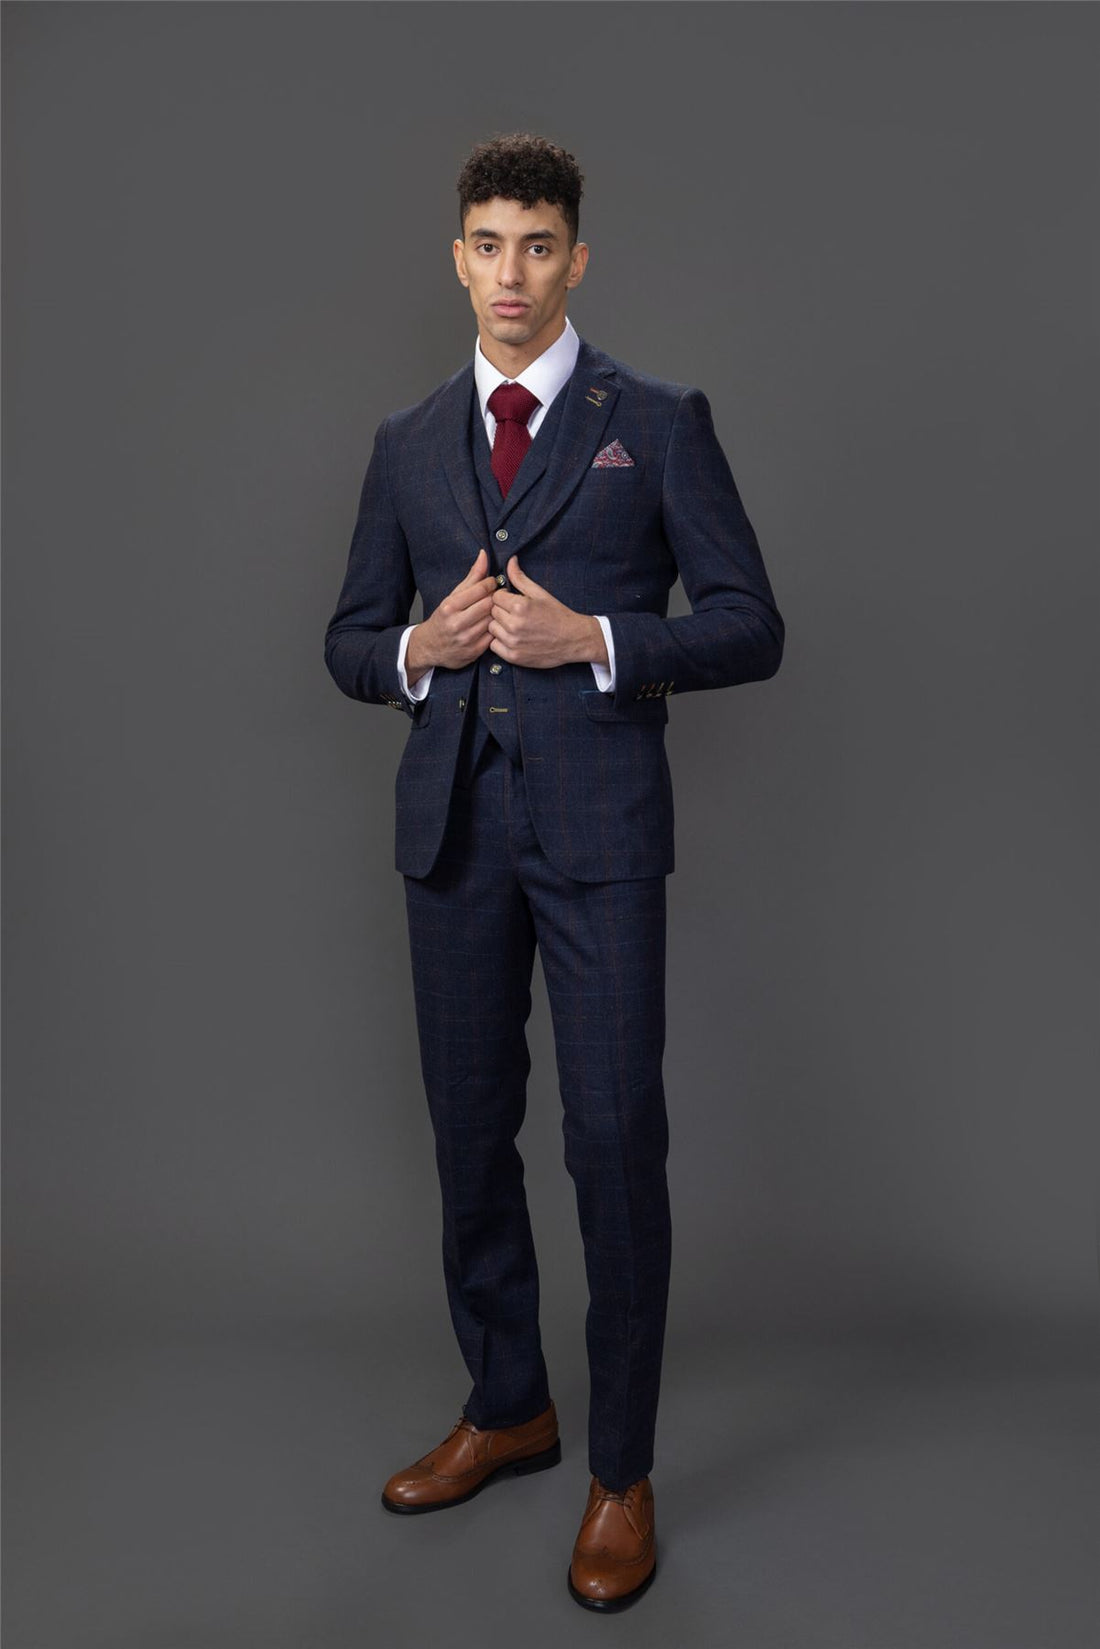 Men's Suit Wool Blend 3 Piece Navy Blue Herringbone Check Tweed Slim Fit Formal Dress